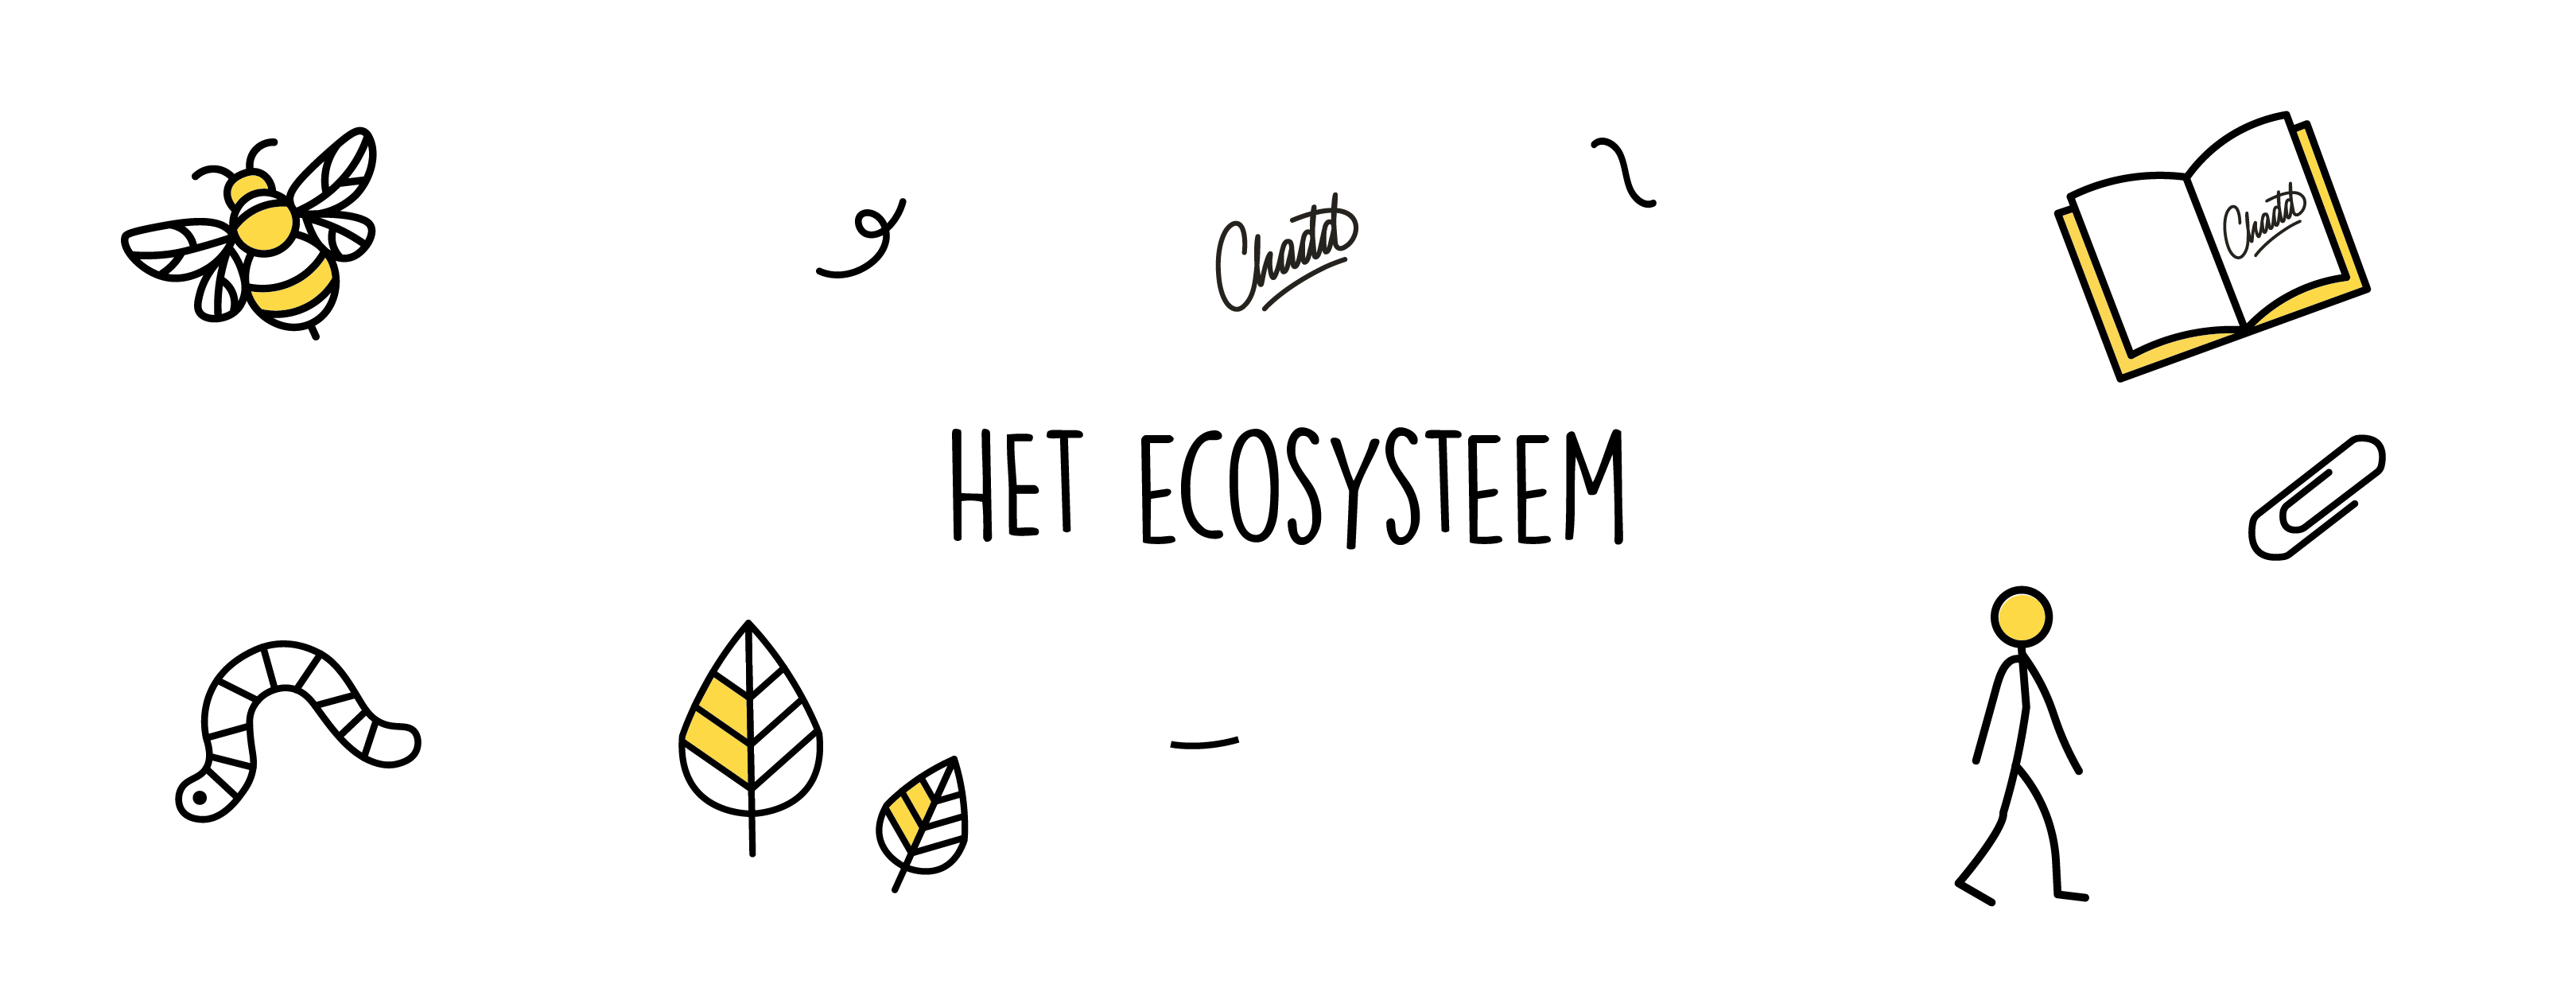 ecosysteem